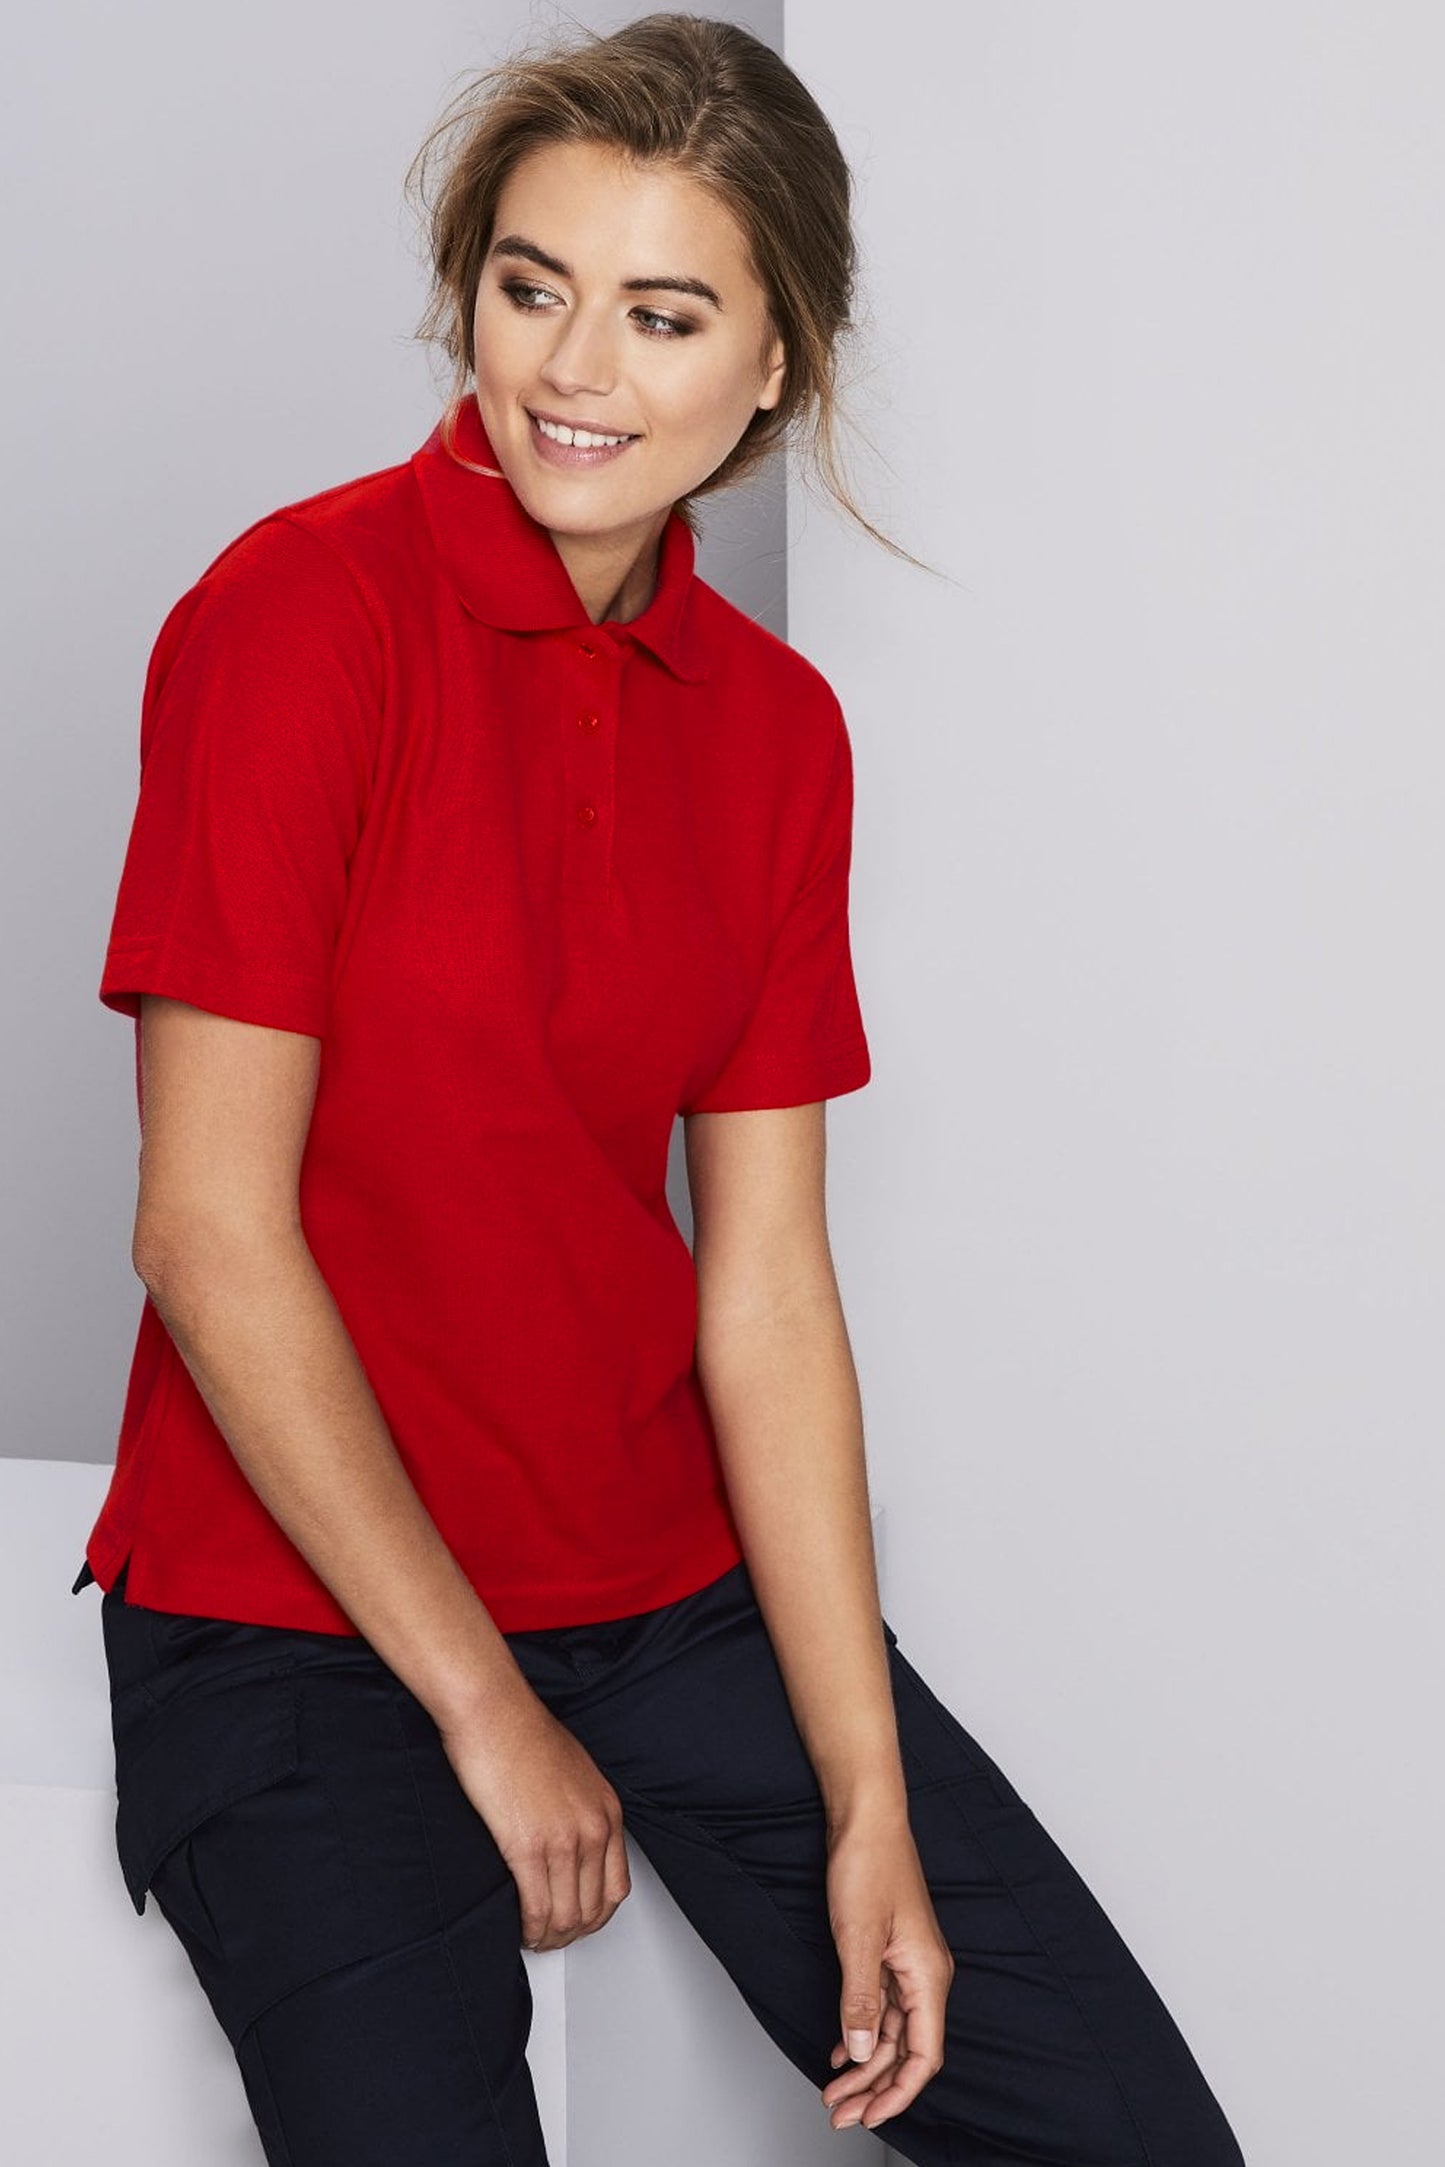 Women's Red Polo Shirt